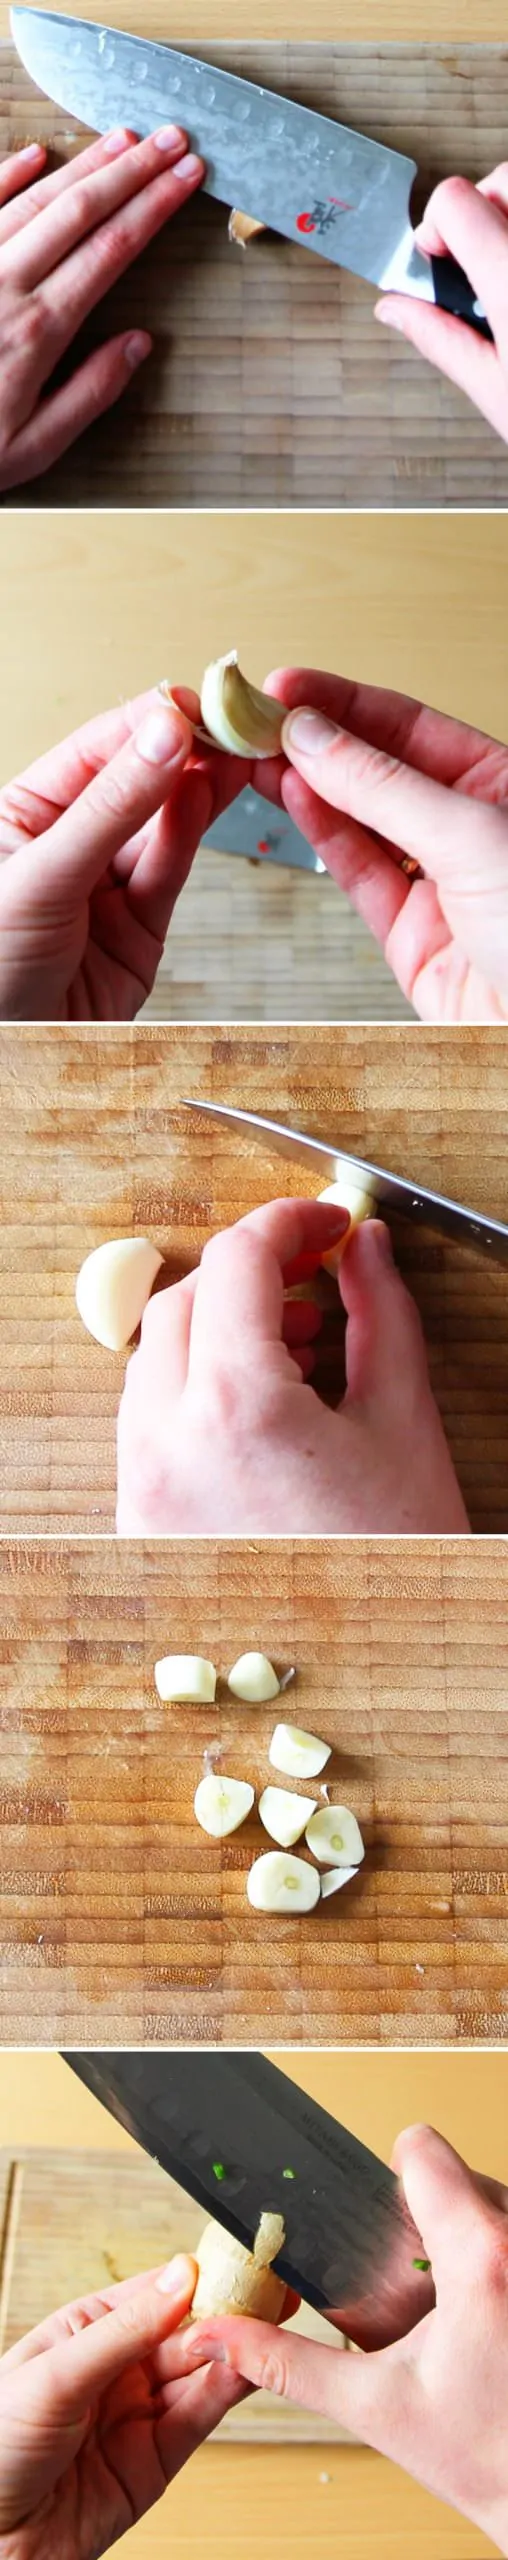 Teppanyaki Grillsauce Schritt 2.2 Ingwer und Knoblauch schneiden